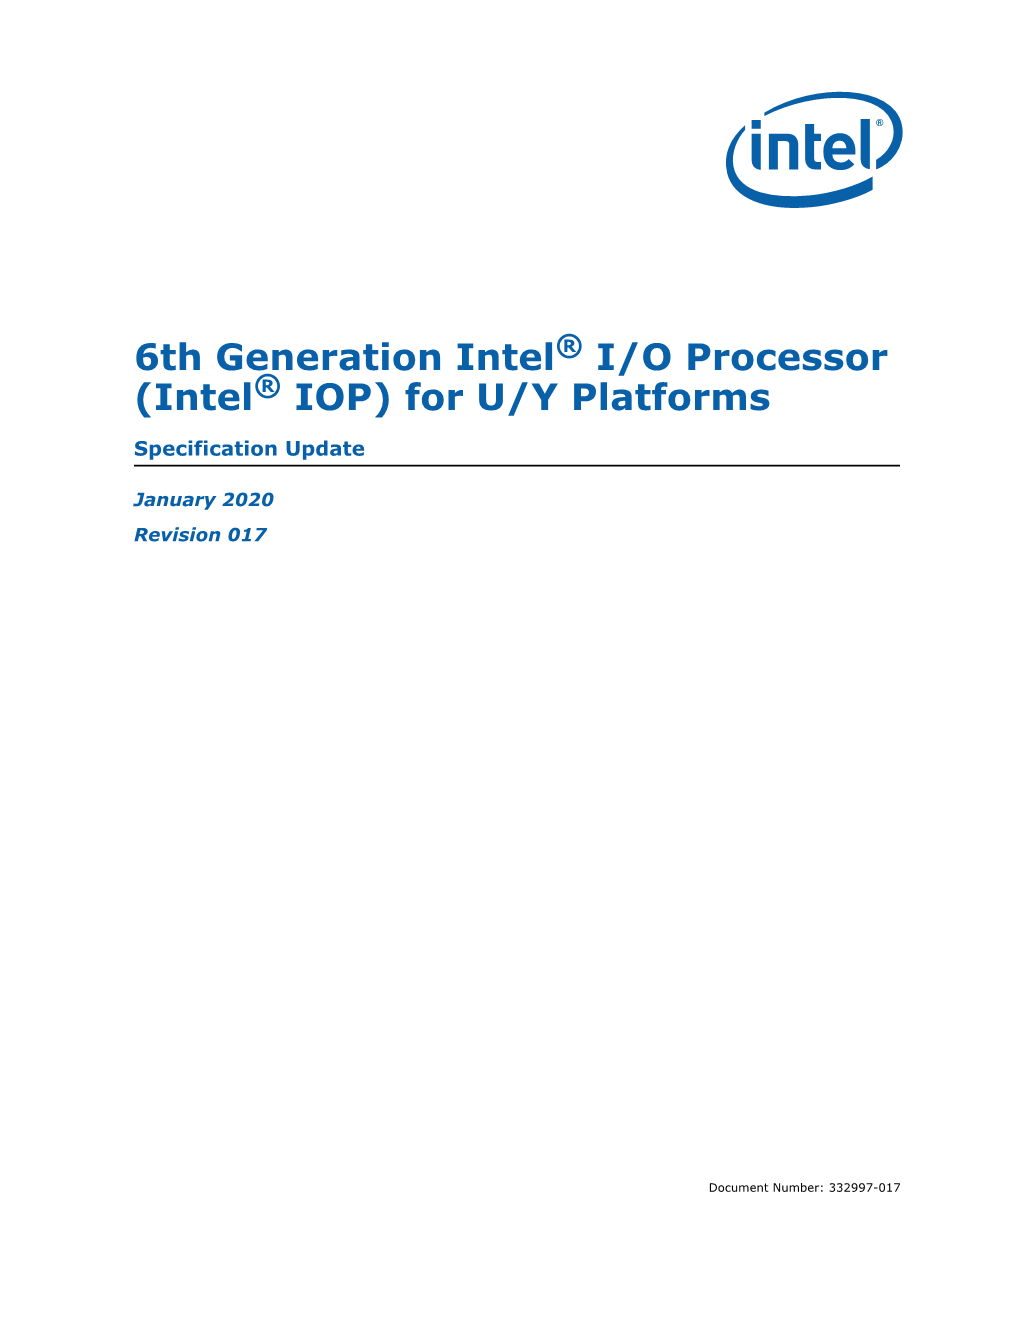 6Th Generation Intel® I/O Processor (Intel® IOP) for U/Y Platforms